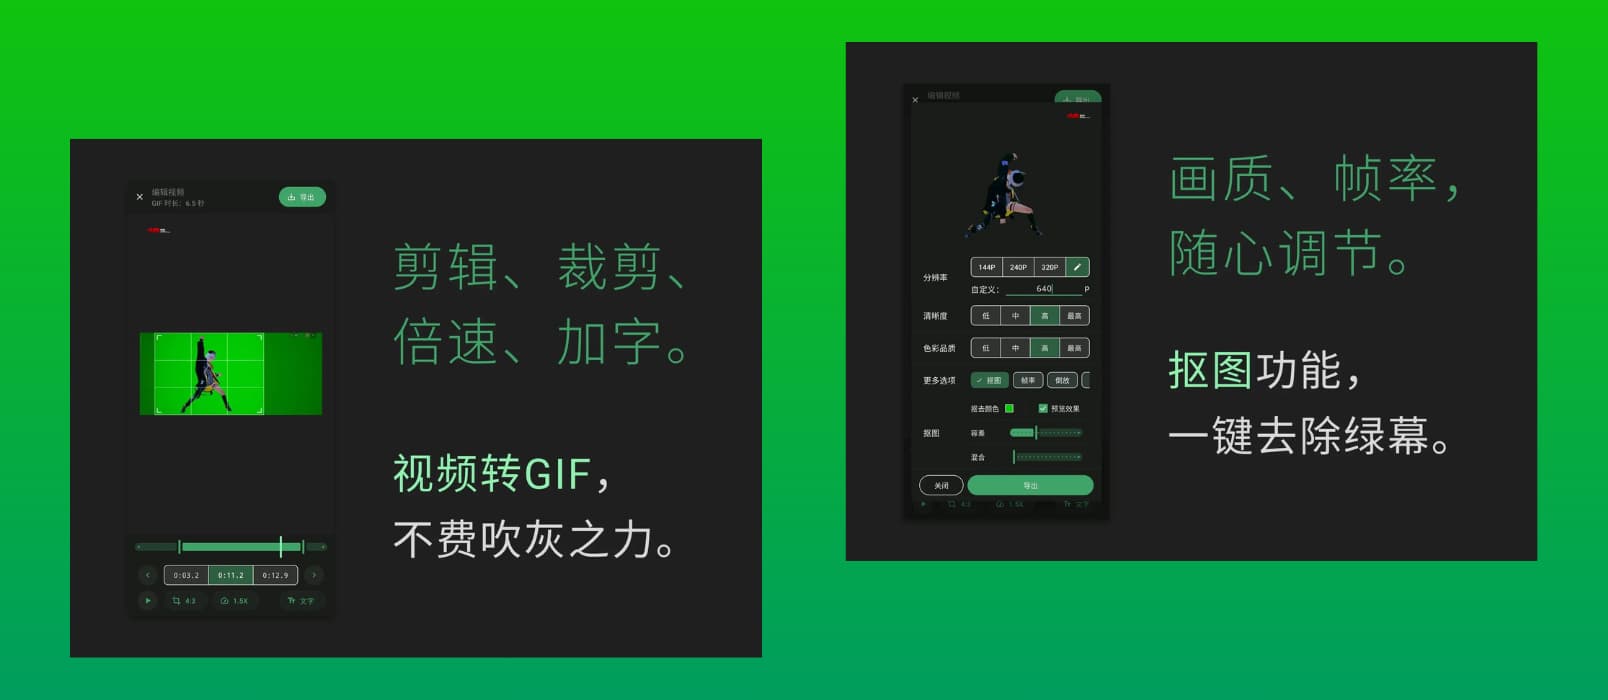 小萌GIF - 免费、开源，将视频转换为 GIF[Android]